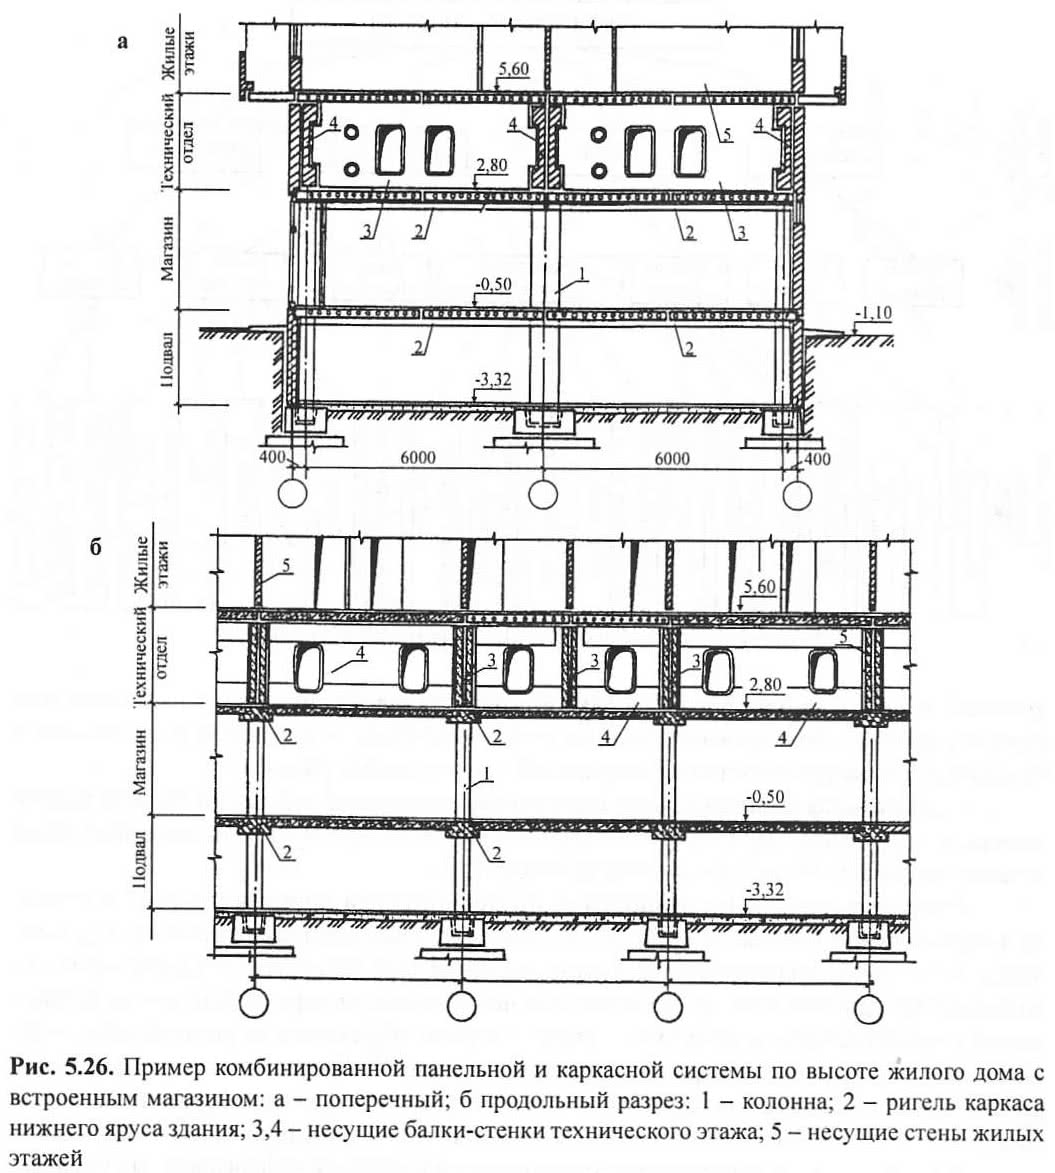 Рис. 5.26. Пример комбинированной панельной и каркасной системы